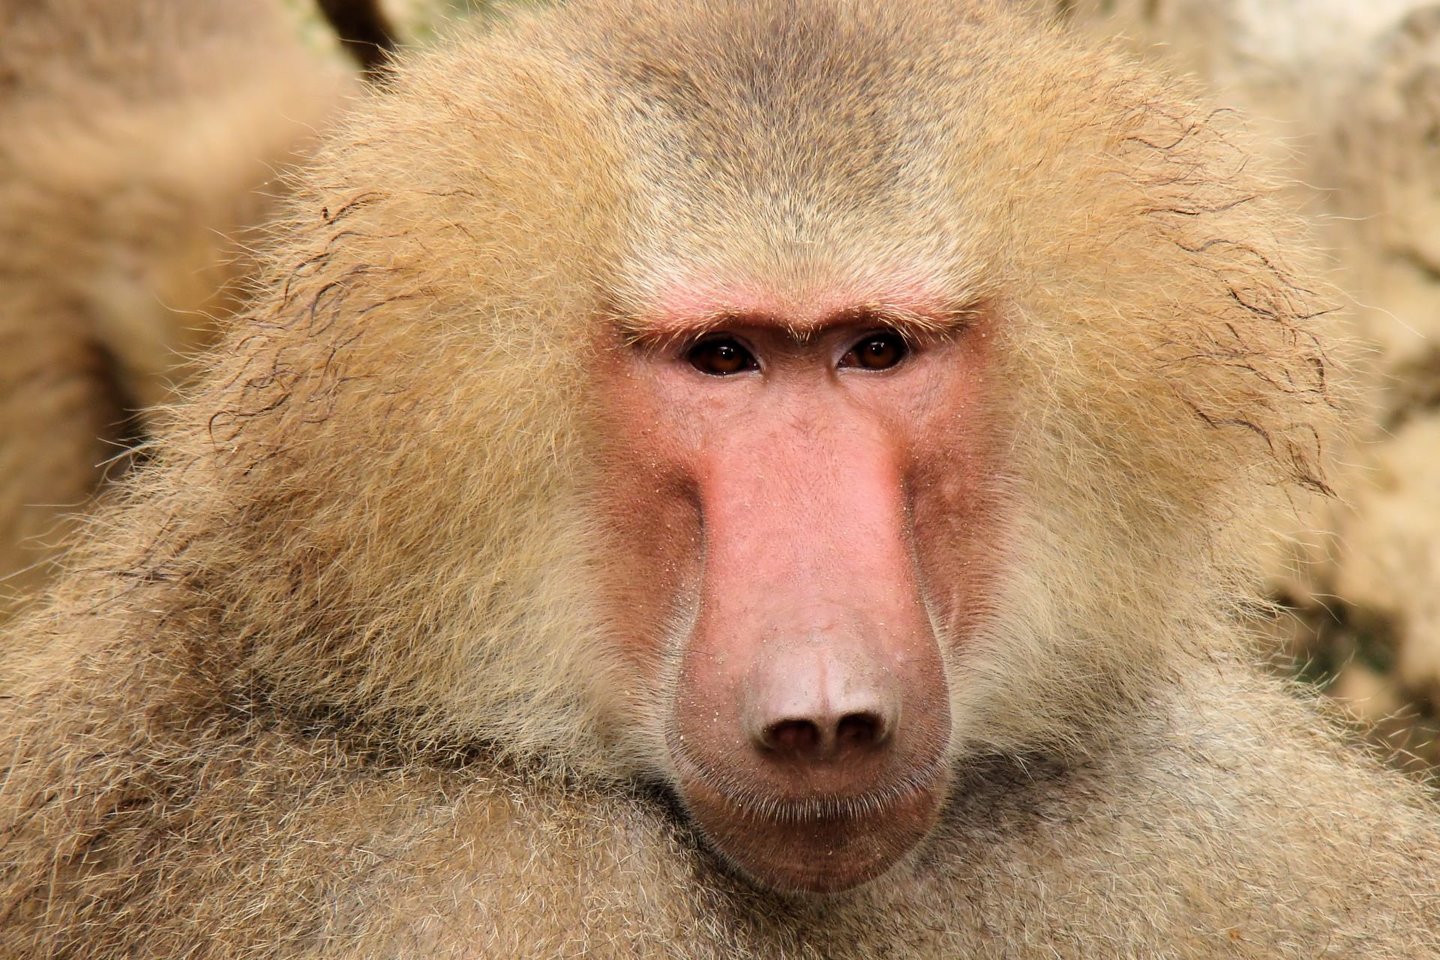  Viena iš dviejų Senovės Egipte garbintų babuinų rūšių: hamadrijos babuinas.<br> Wikimedia commons.